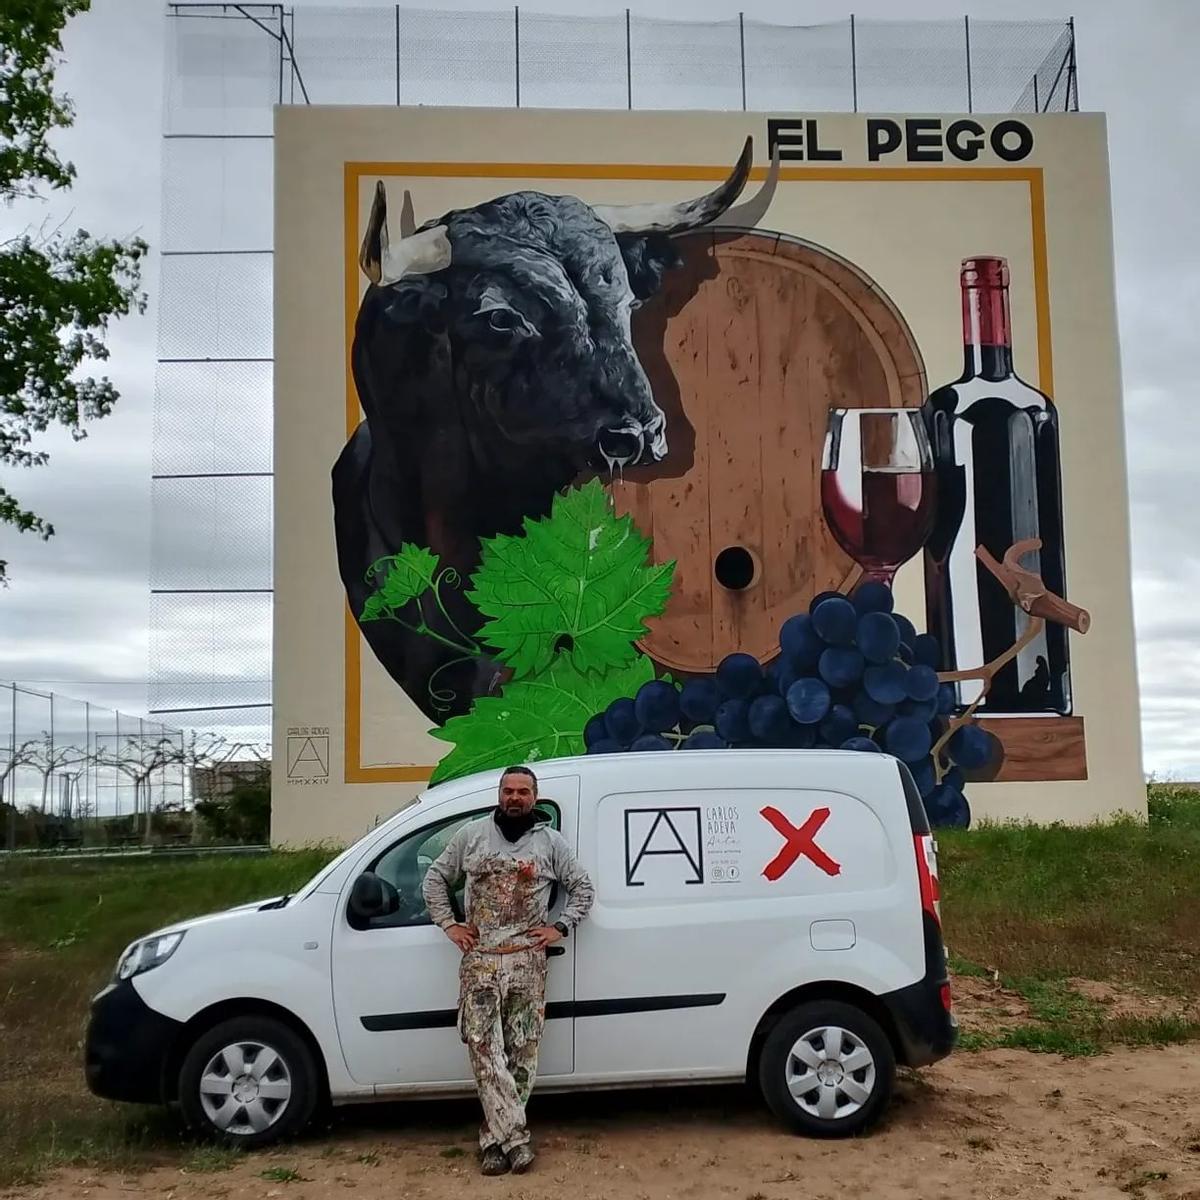 Carlos Adeva posa junto al mural creado en el frontó de El Pego